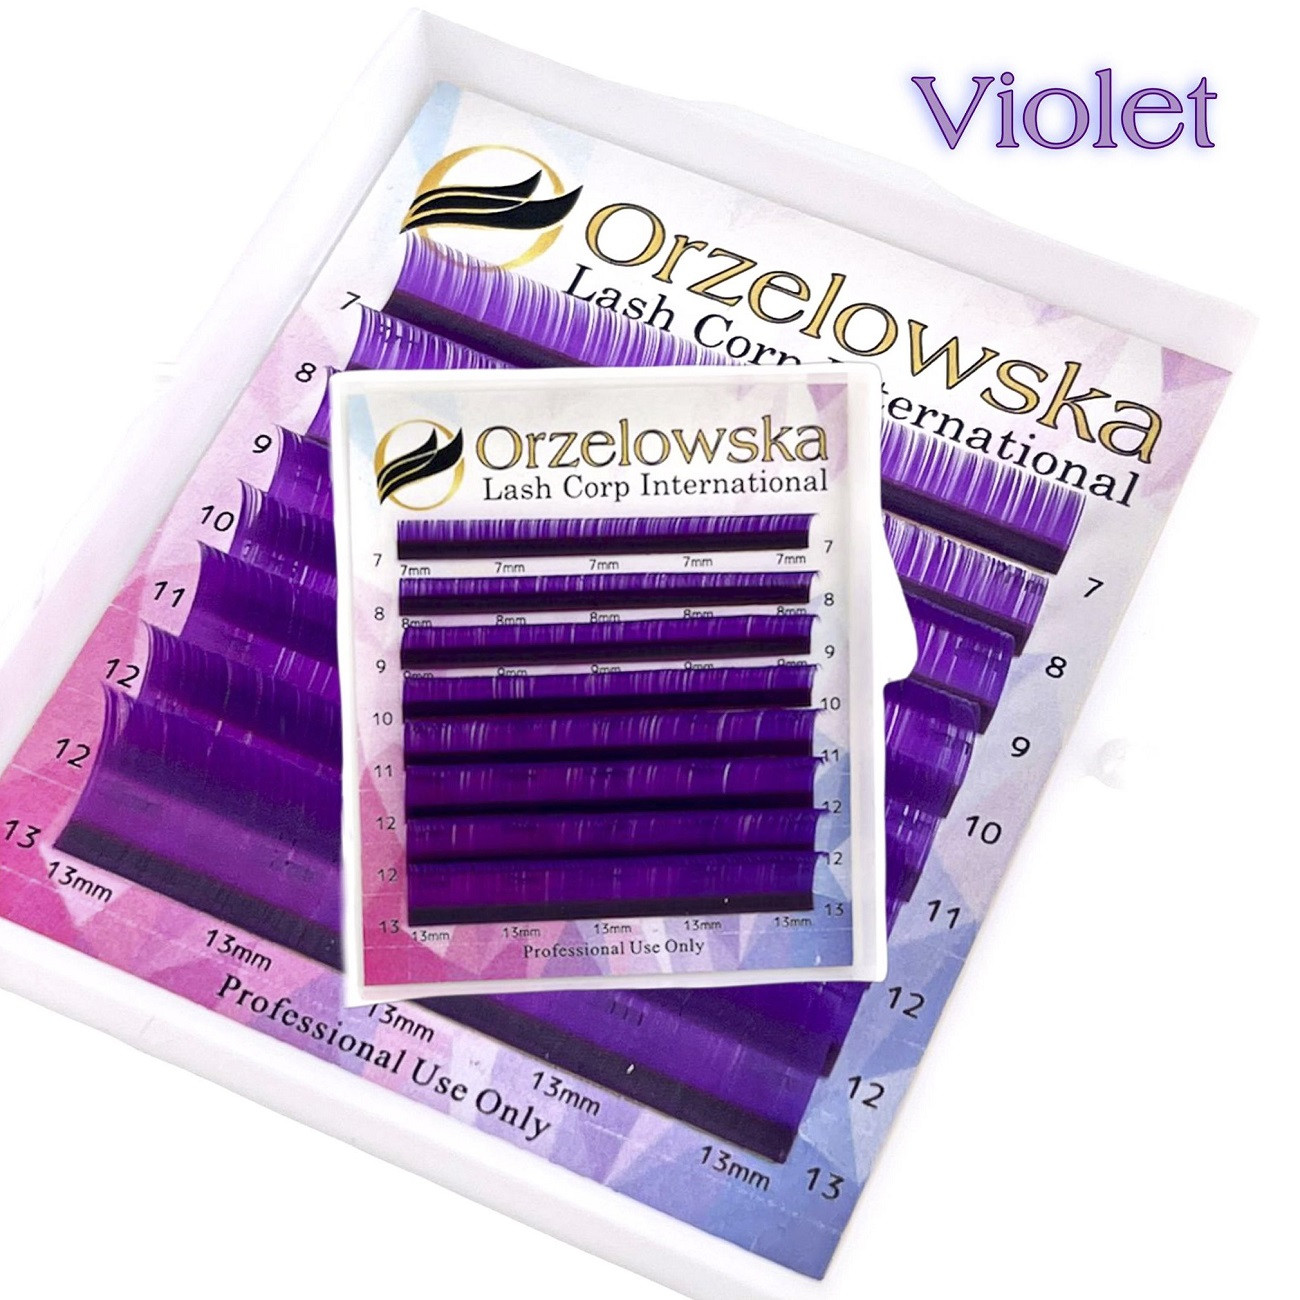 CC 0.07 Pestañas de Color, Violeta, extensiones de pestañas, bandeja con 8 líneas, Orzelowska